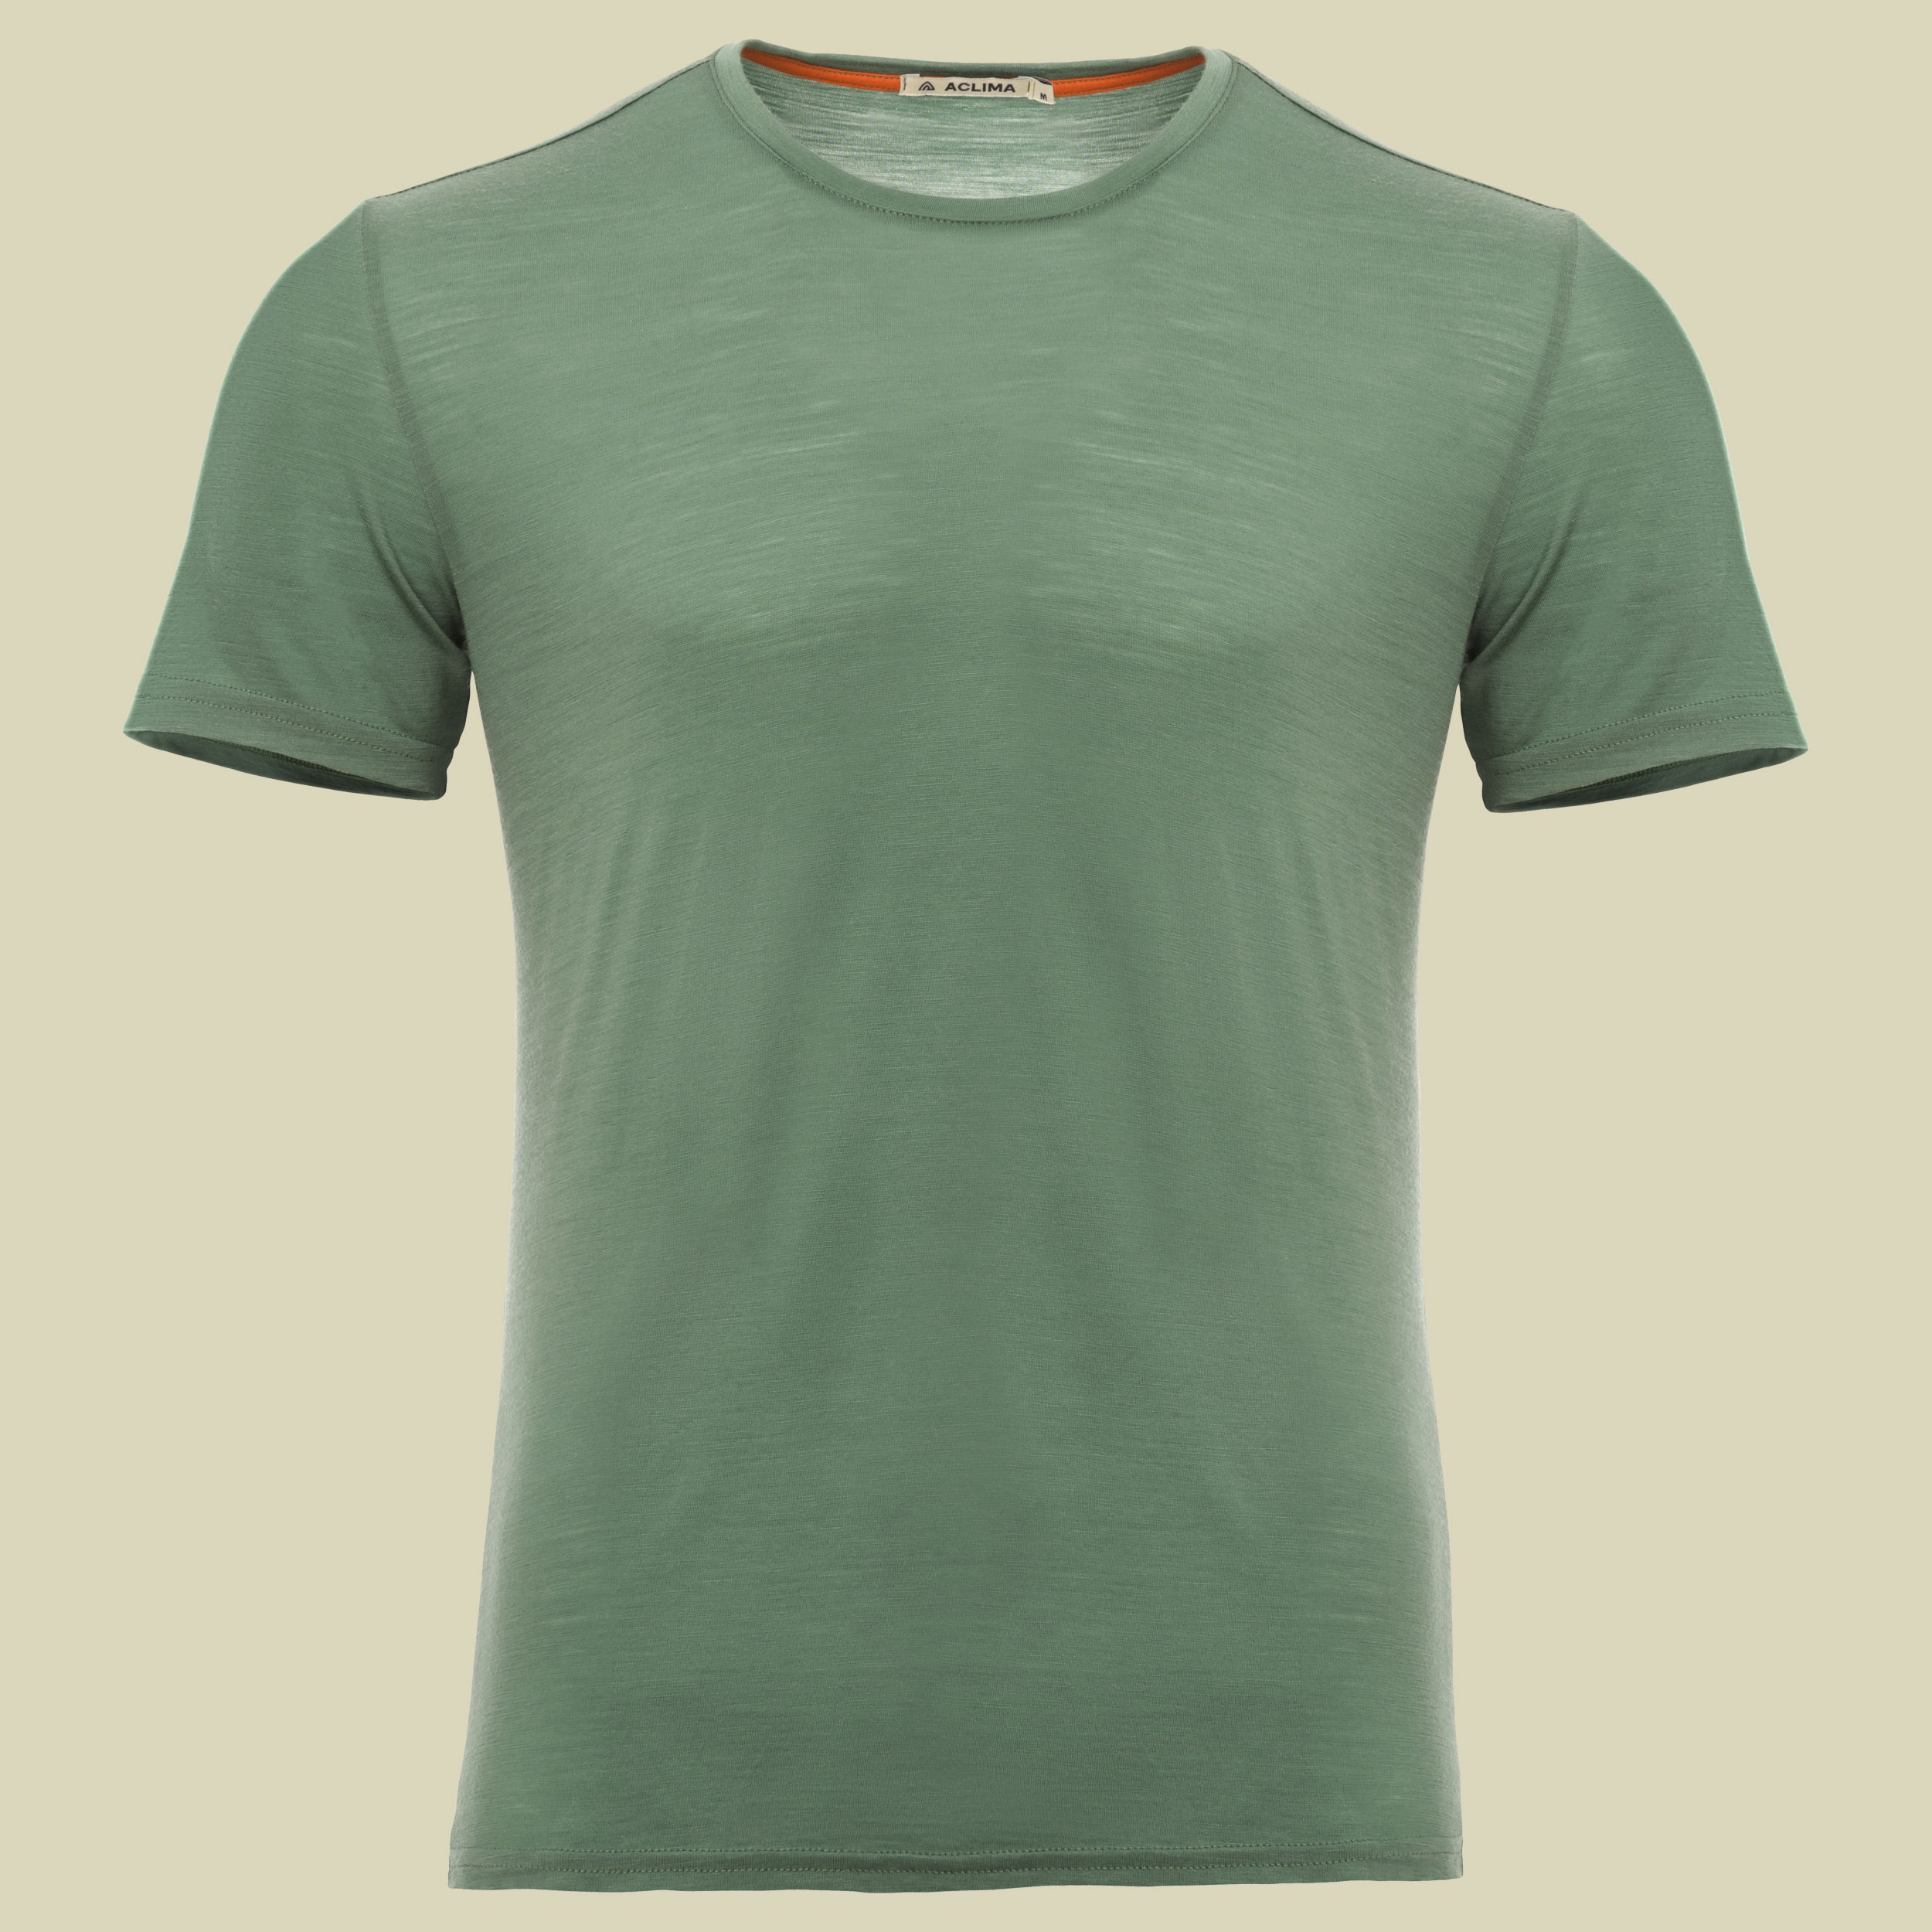 LightWool T-Shirt Men Größe S Farbe dark ivy